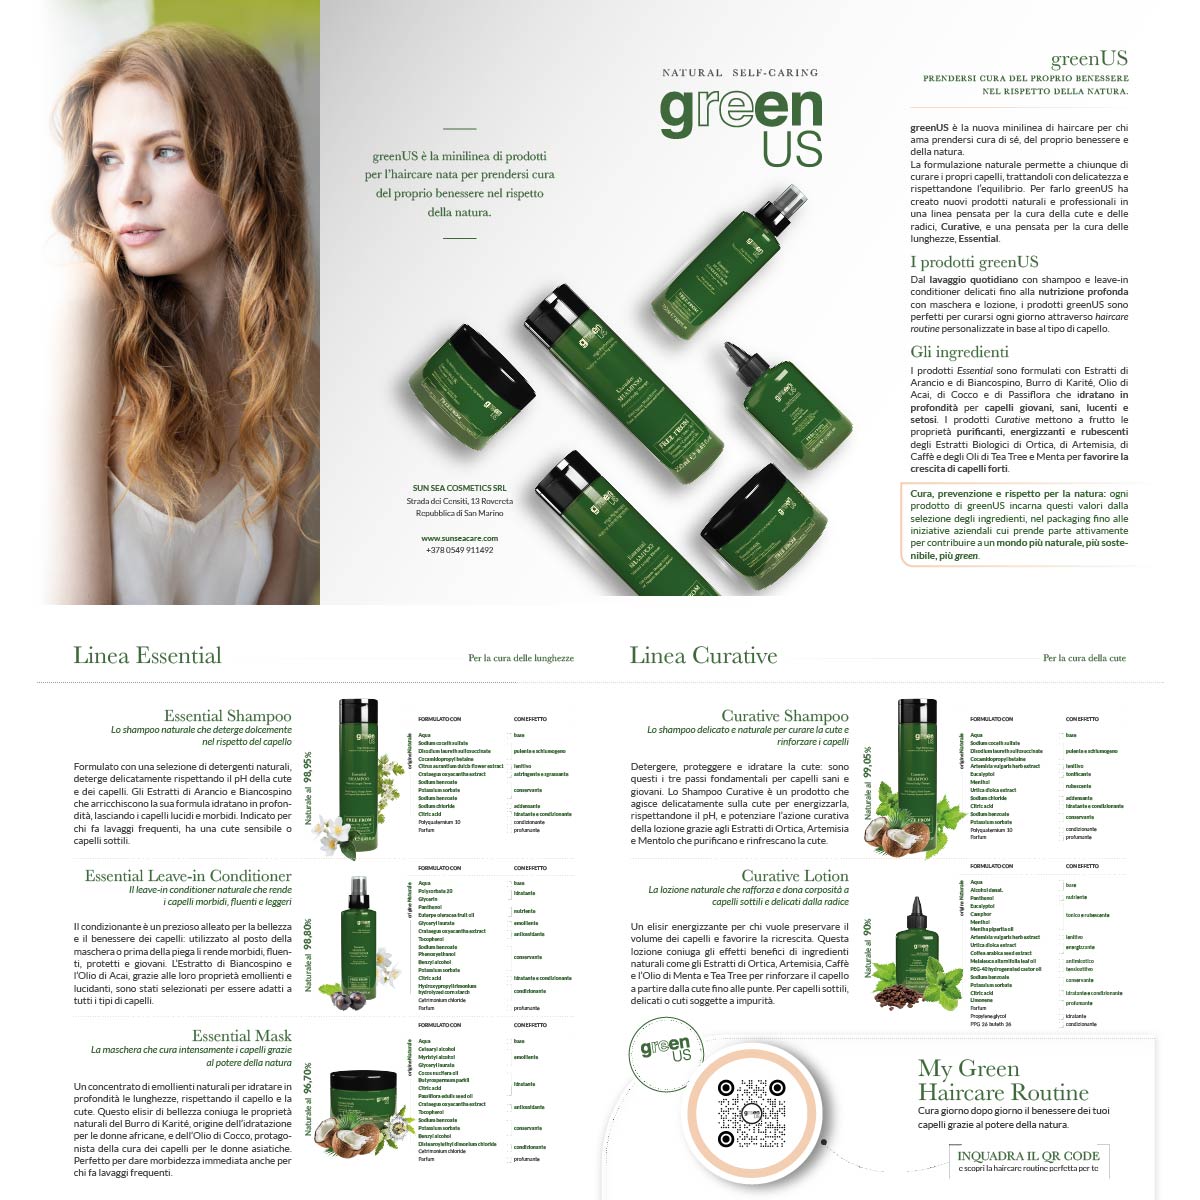 greenus-sunseacosmetics-beauty-fashion-brand-identity-happy-minds-4